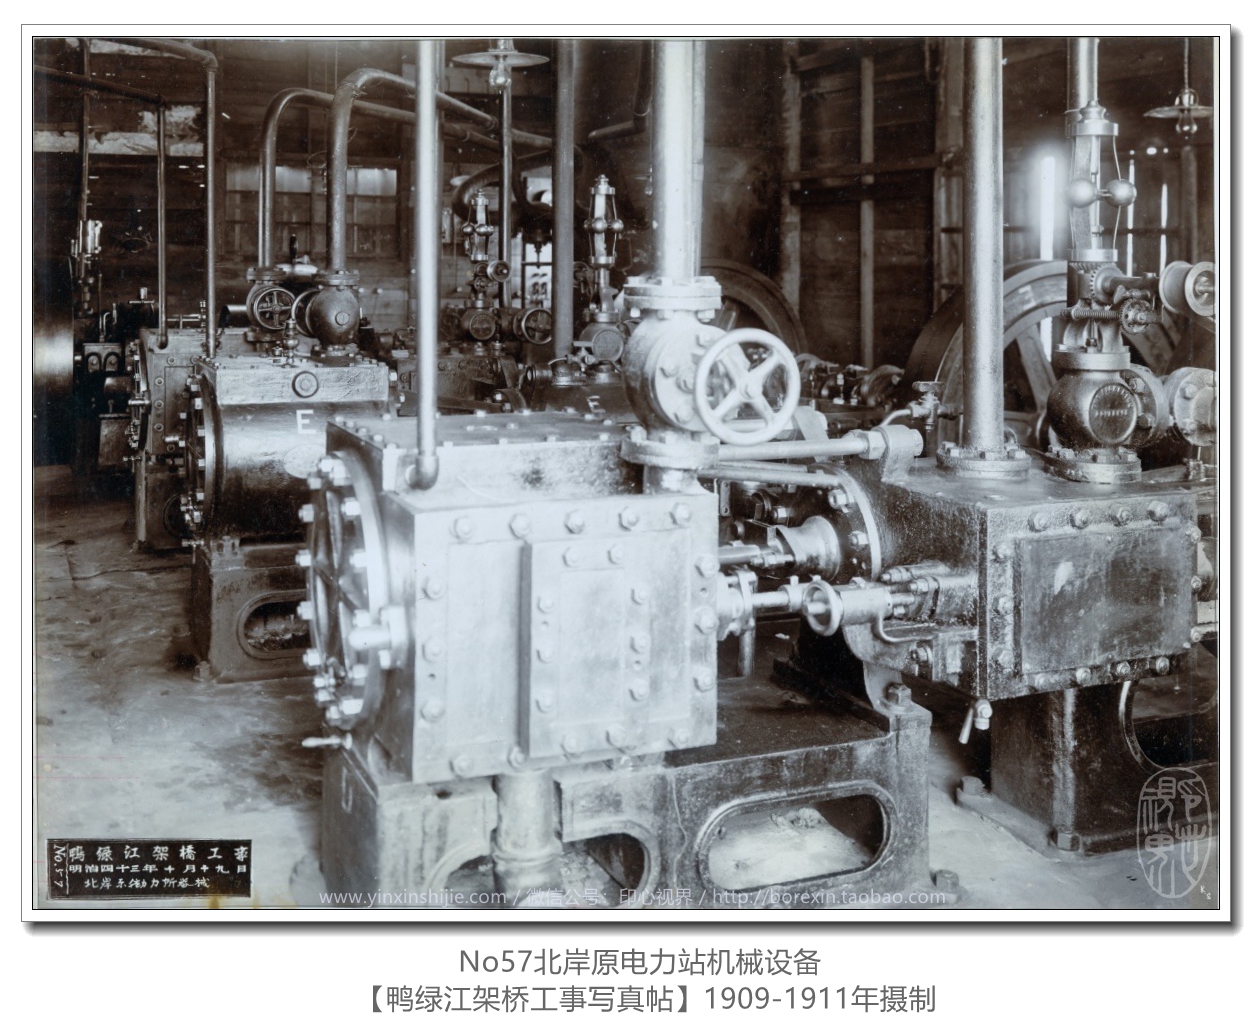 【万卷书】《鸭绿江架桥工事写真帖1911》No57北岸原电力站机械设备